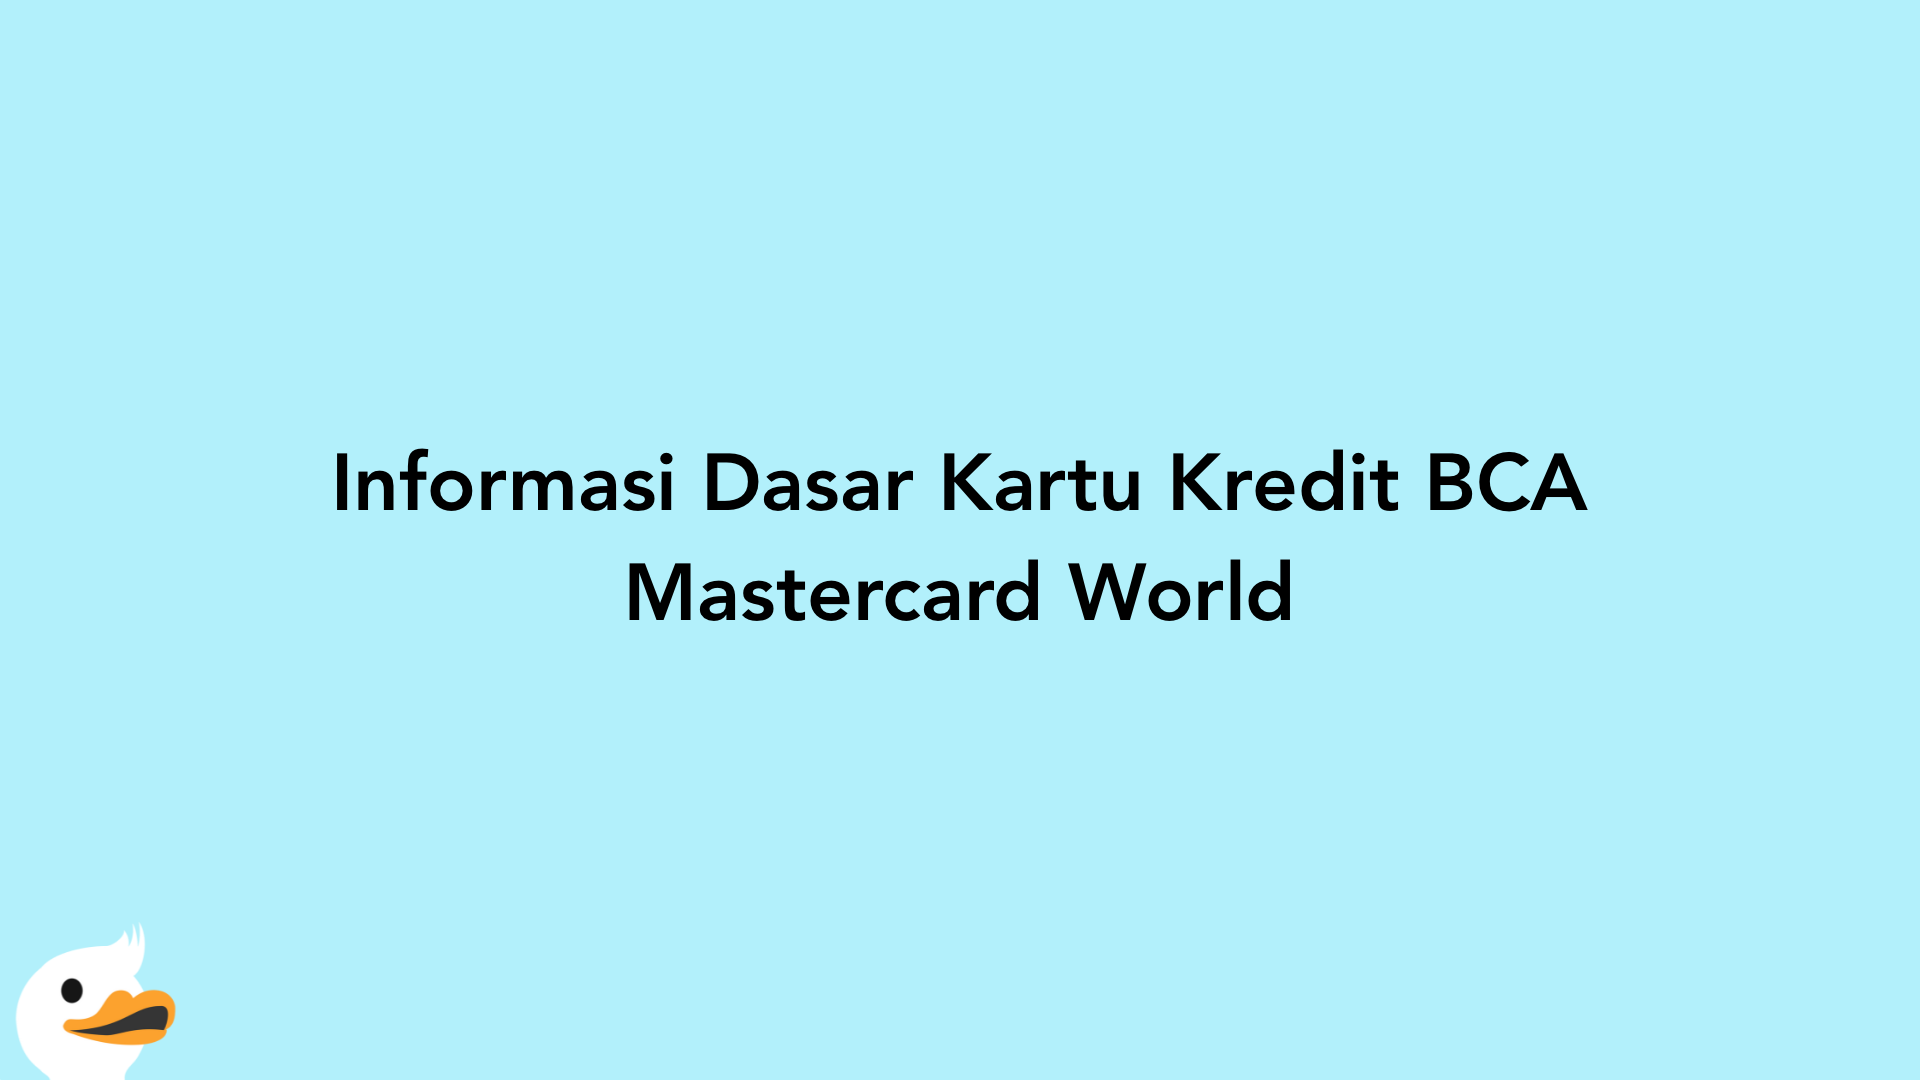 Informasi Dasar Kartu Kredit BCA Mastercard World